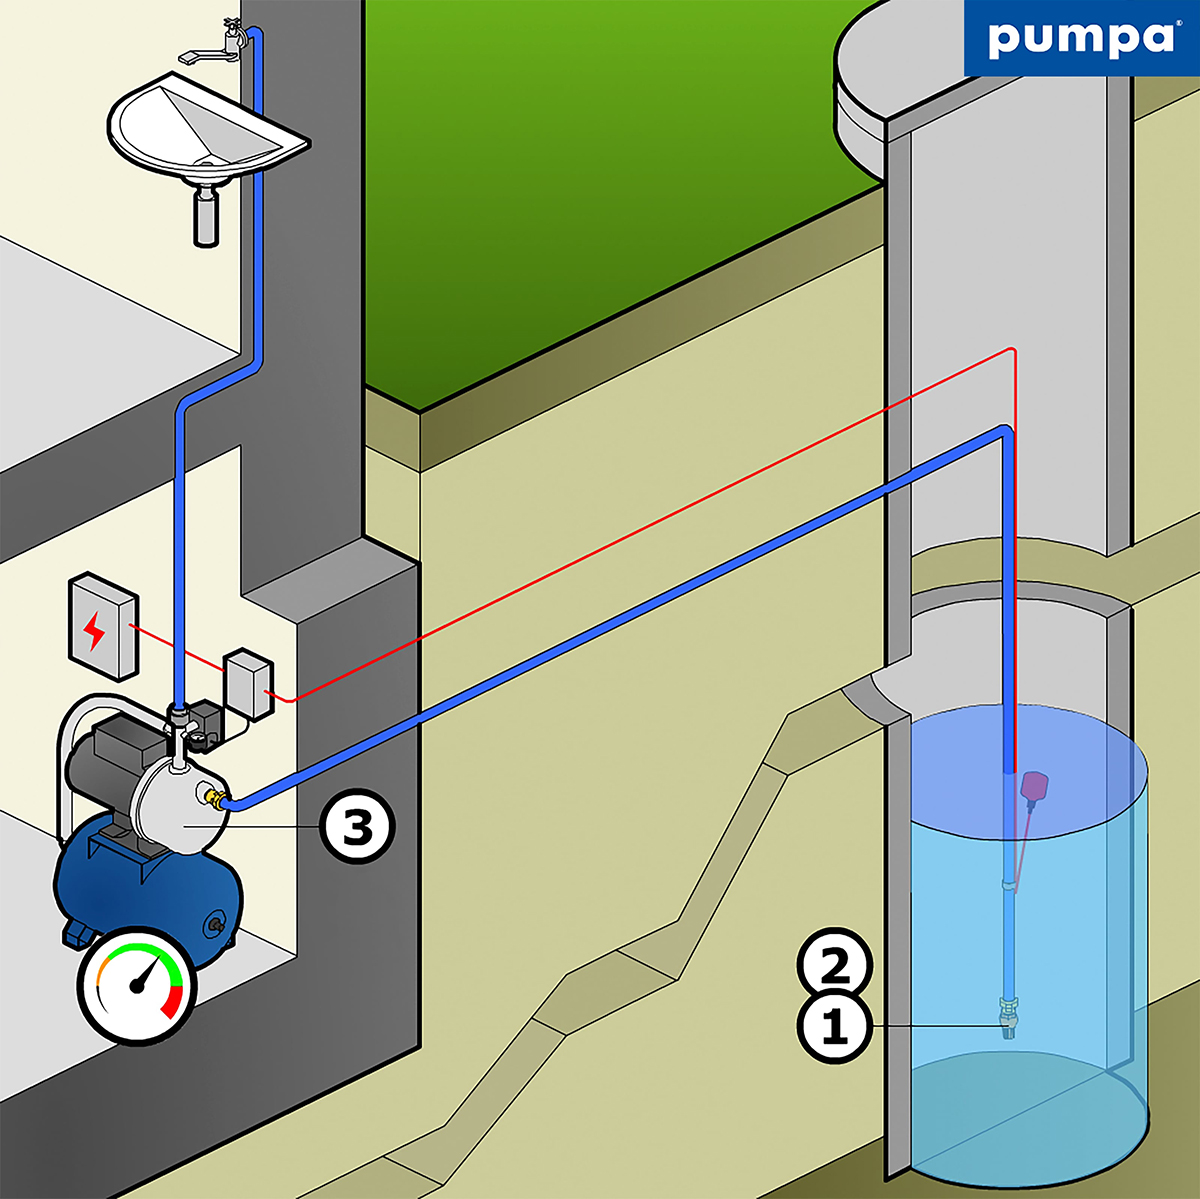 Na čerpanie vody zo studne z hĺbky do 8m môžeme použiť kompletnú domácu vodáreň. V studni je umiestnený sací kôš so spätnou klapkou (1,2) a prípadnou ochrana pred suchobehom. Domáca vodáreň je zložená z čerpadla (3), tlakovej nádoby s manometrom a tlakovým spínačom nainštalovaným na tzv. päťcestnej armatúre. Pri poklese tlaku v sústave (napr. otvorením kohútika) pod nastavený zapínací tlak, tlakový spínač automaticky zopne čerpadlo a vypne ho pri dosiahnutí nastaveného vypínacieho tlaku. Pri nedostatku vody a v prípade, že máme v studni nainštalovanú ochranu pred suchobehom, spínacie zariadenie čerpadlo vypne a ochráni ho pred poškodením. Spínacie zariadenie ochrany pred suchobehom nedovolí zopnúť čerpadlo skôr, ako je dosiahnuté dostatočné množstvo vody v studni. Ako ochranu pred suchobehom môžeme použiť buď ponorné sondy, alebo plavákový spínač. Pre bezproblémovú funkciu systému je vždy nutné dodržať správne nastavenie tlaku vzduchu v expanznej nádobe, ktorý má byť o 0,2 baru nižší, než zapínací (spodný) tlak na tlakovom spínači. Tento tlak je nutné nastaviť v suchom stave nádoby, teda pred vlastnou montážou do systému.